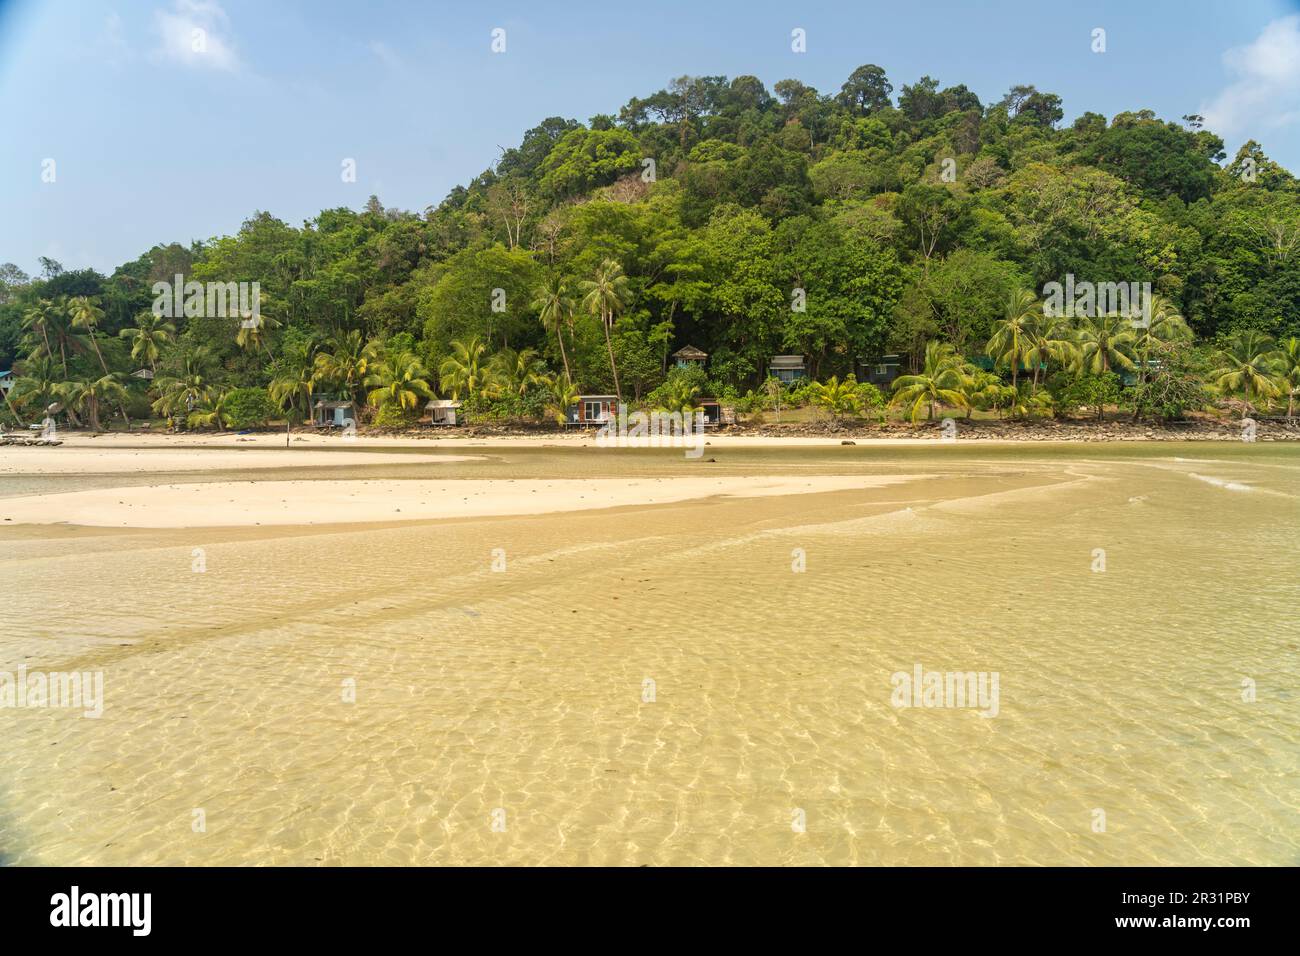 Strand und Bucht von Bang Bao, Insel Ko Kut oder Koh Kood im Golf von Thailand, Asien   |  Bang Bao Beach and bay, Ko Kut or Koh Kood, island in the G Stock Photo